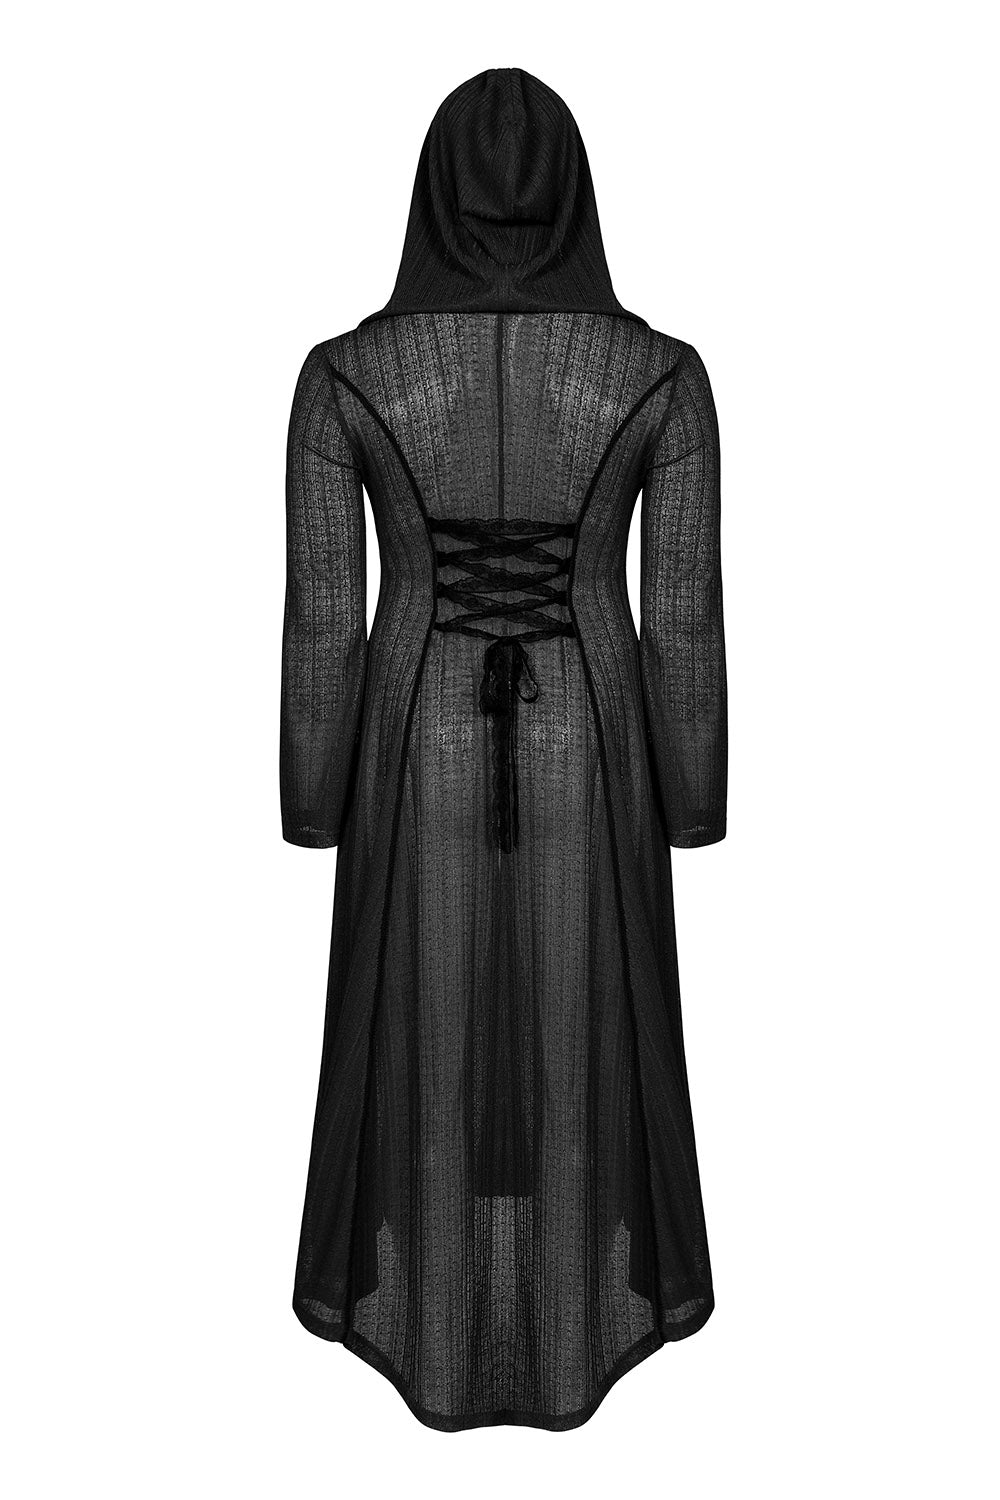 Gypsy Curse Gothic Coat